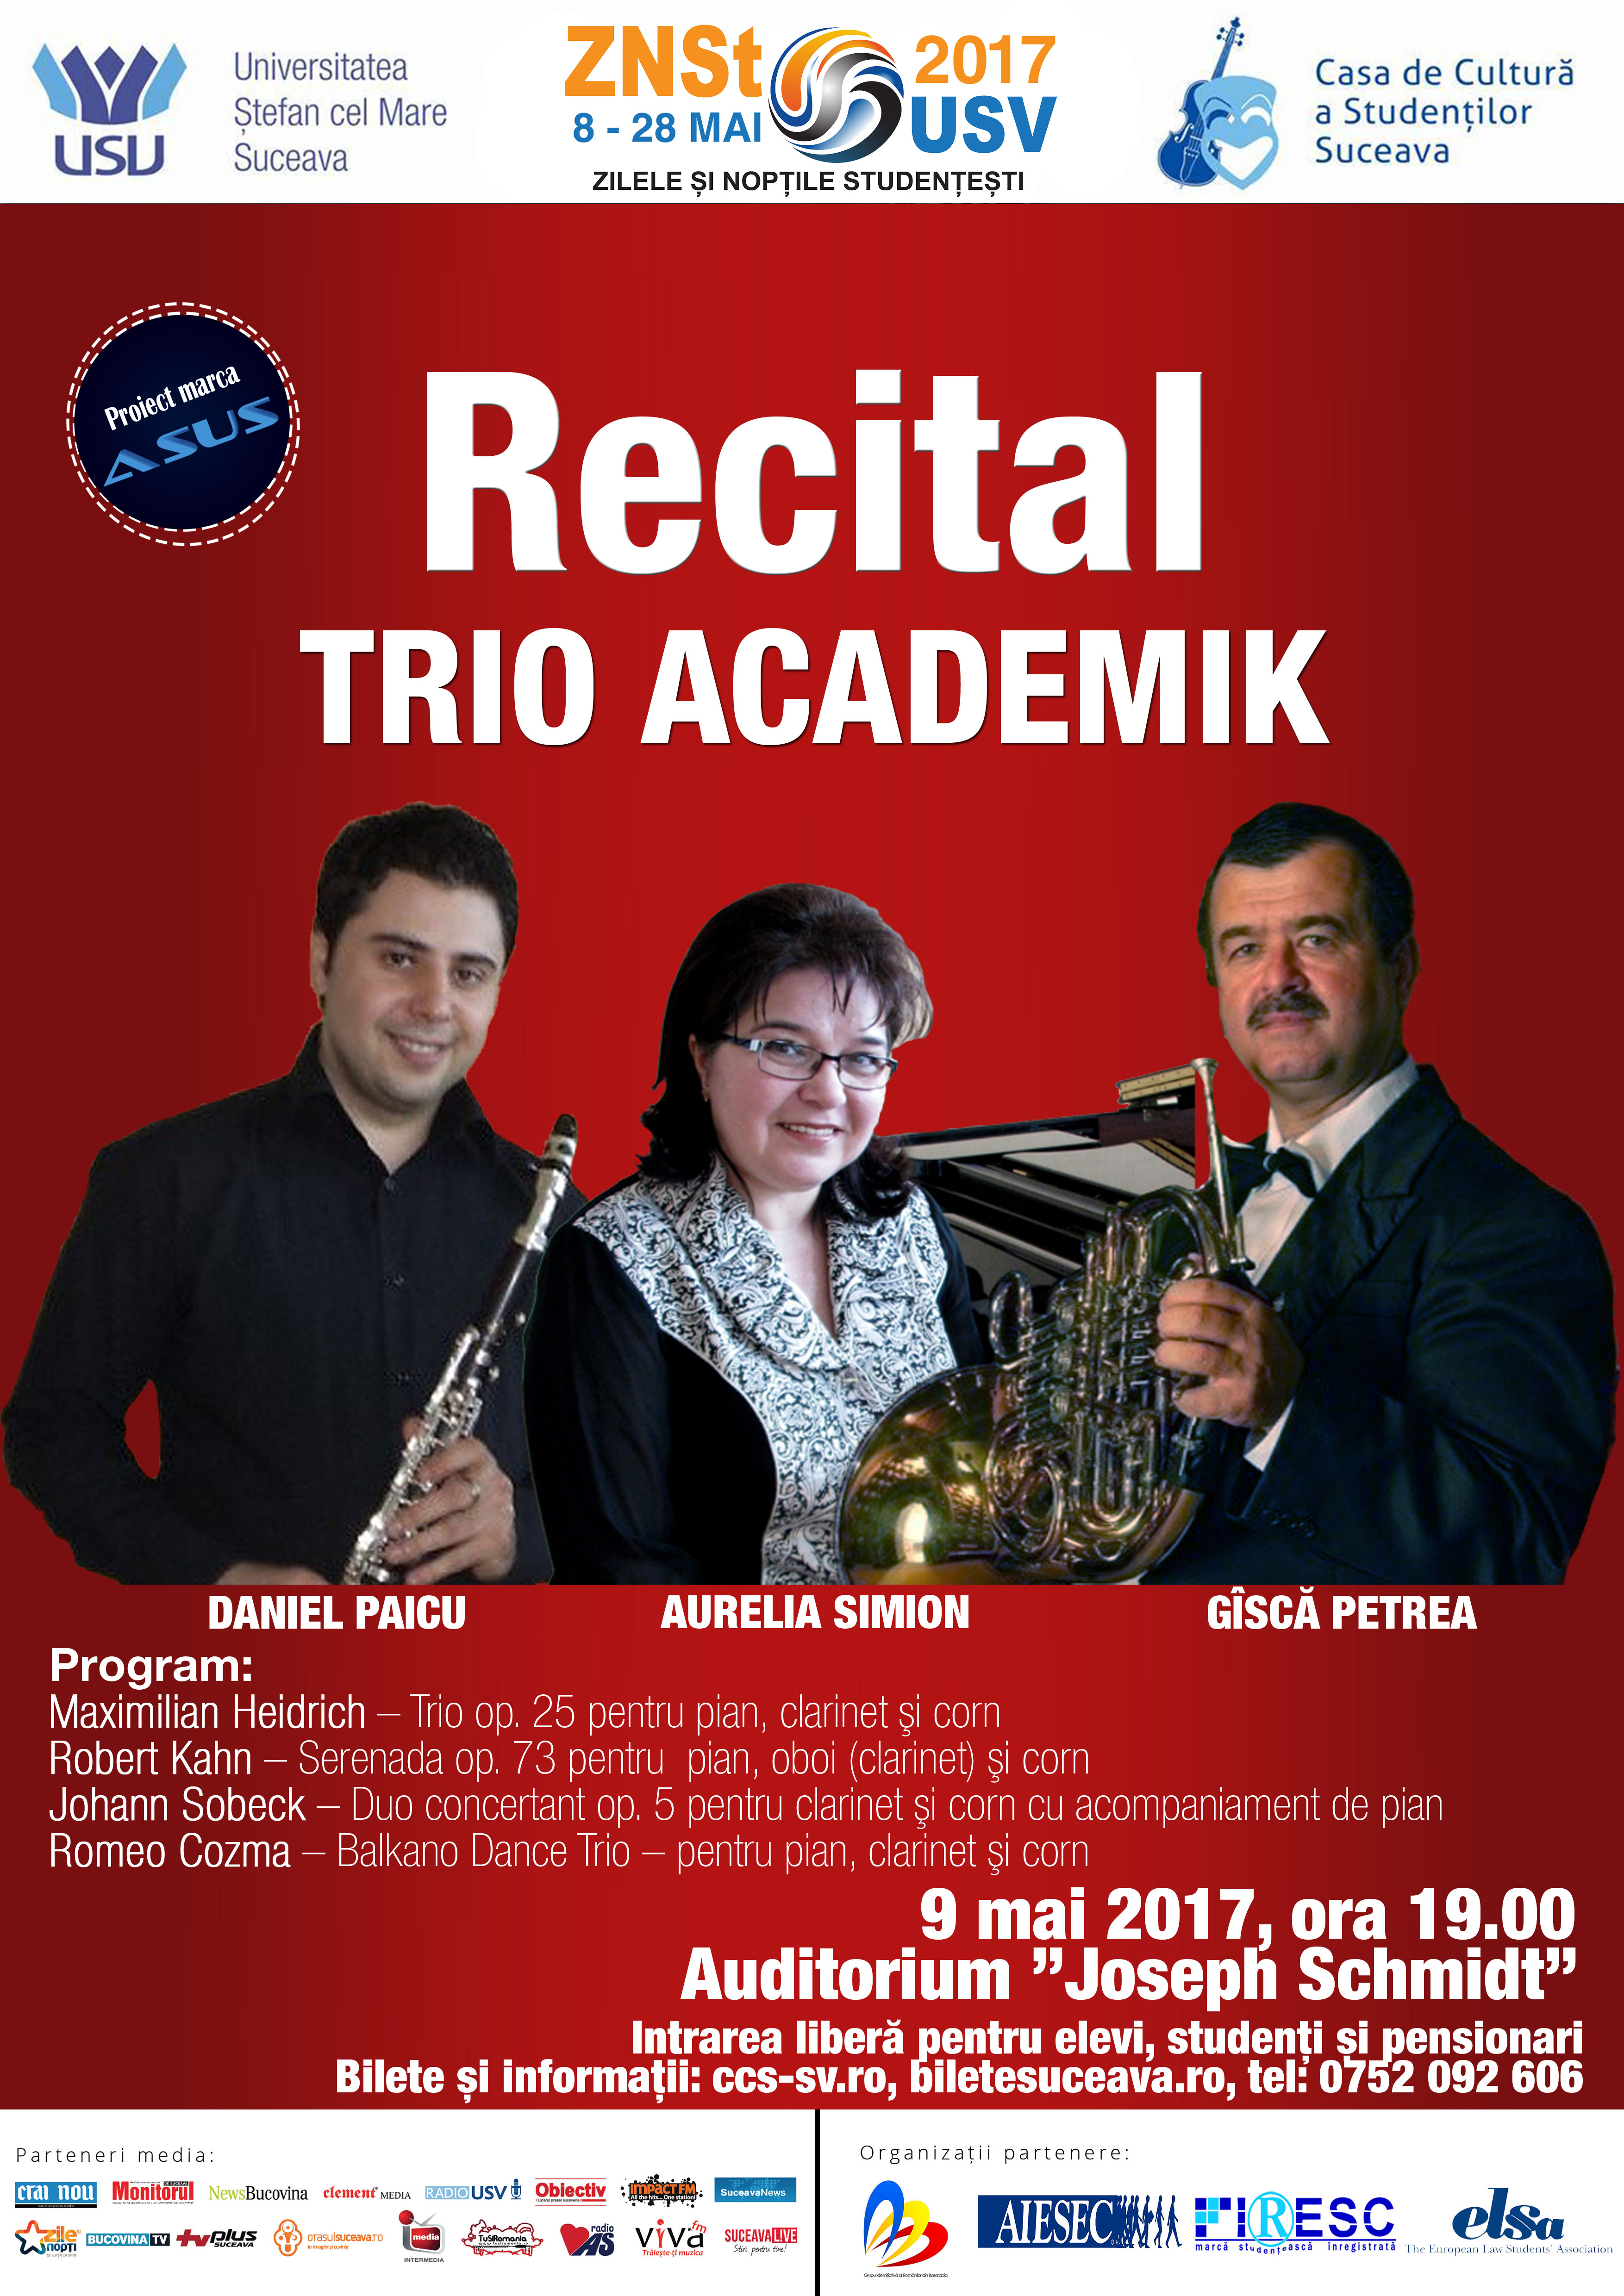 Trio Academik Recital